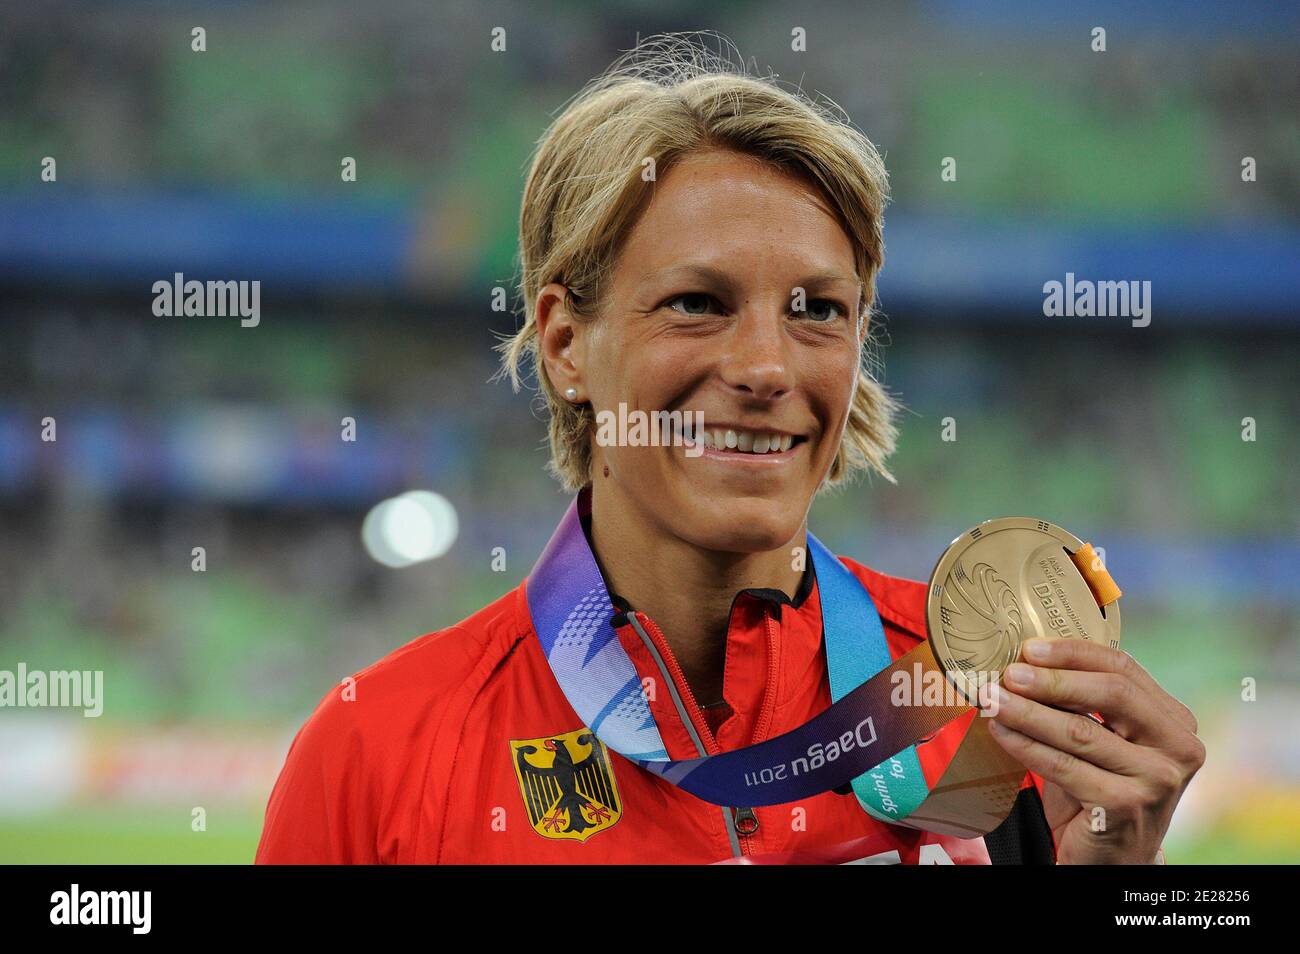 Jennifer Oeser, de Alemania, posa con su medalla de plata después del heptathlon femenino durante el cuarto día del XIII Campeonato Mundial de Atletismo de la IAAF en el Estadio Daegu en Daegu, Corea del Sur, el 30 de agosto de 2011. Foto de Myunggu han/ABACAPRESS.COM Foto de stock